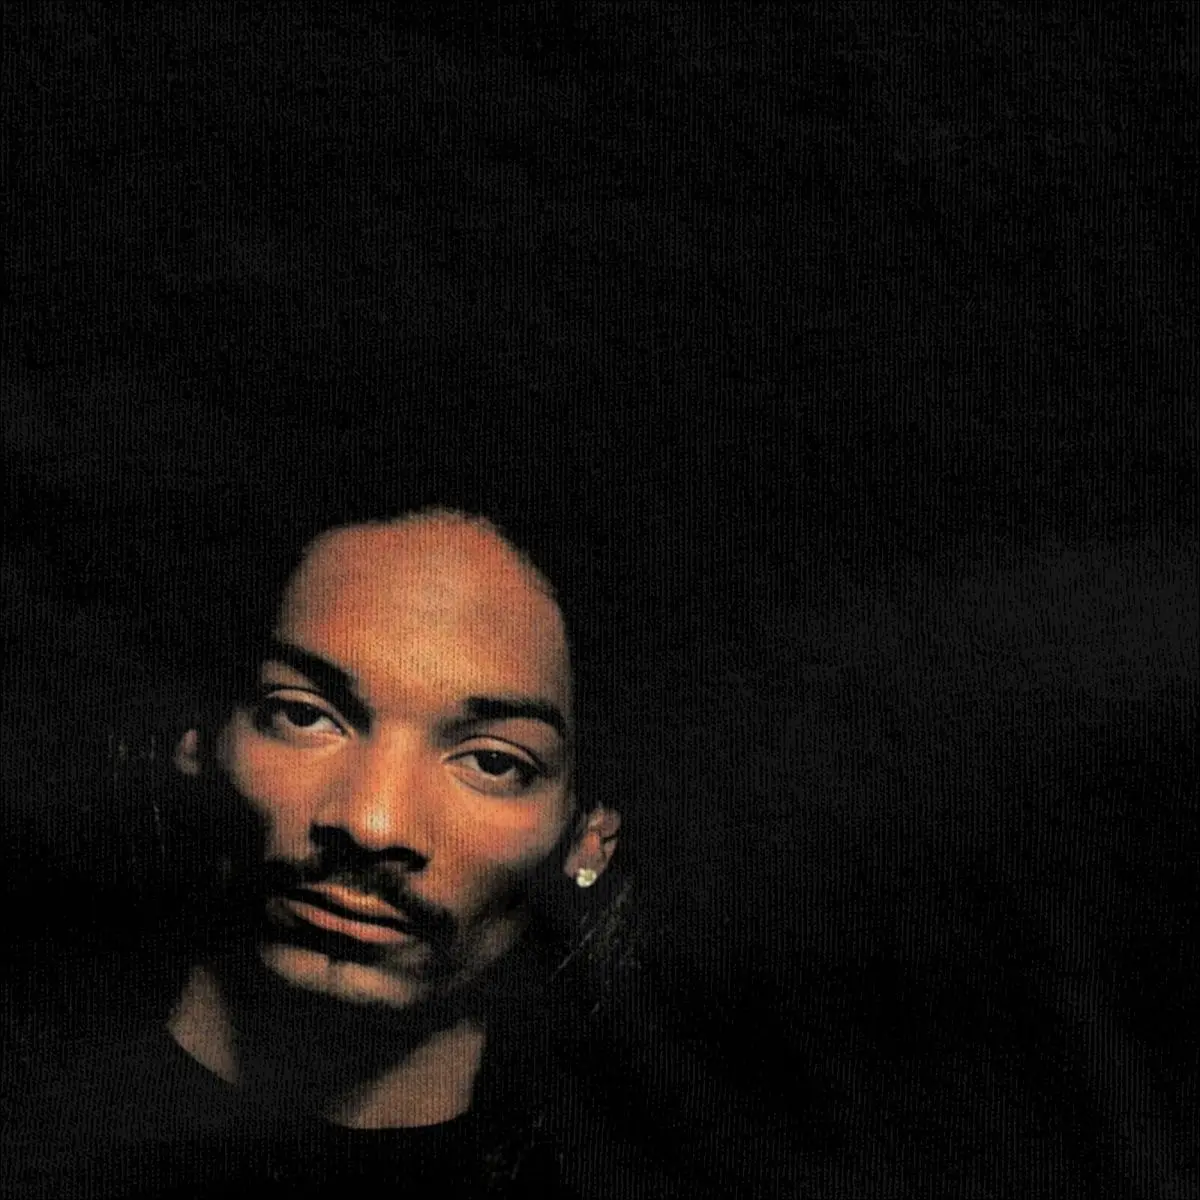 Snoop Dogg Tha Doggfather for Men Women T Shirt Hip Hop Stuff Novelty Tee Shirt Short Sleeve Round Neck